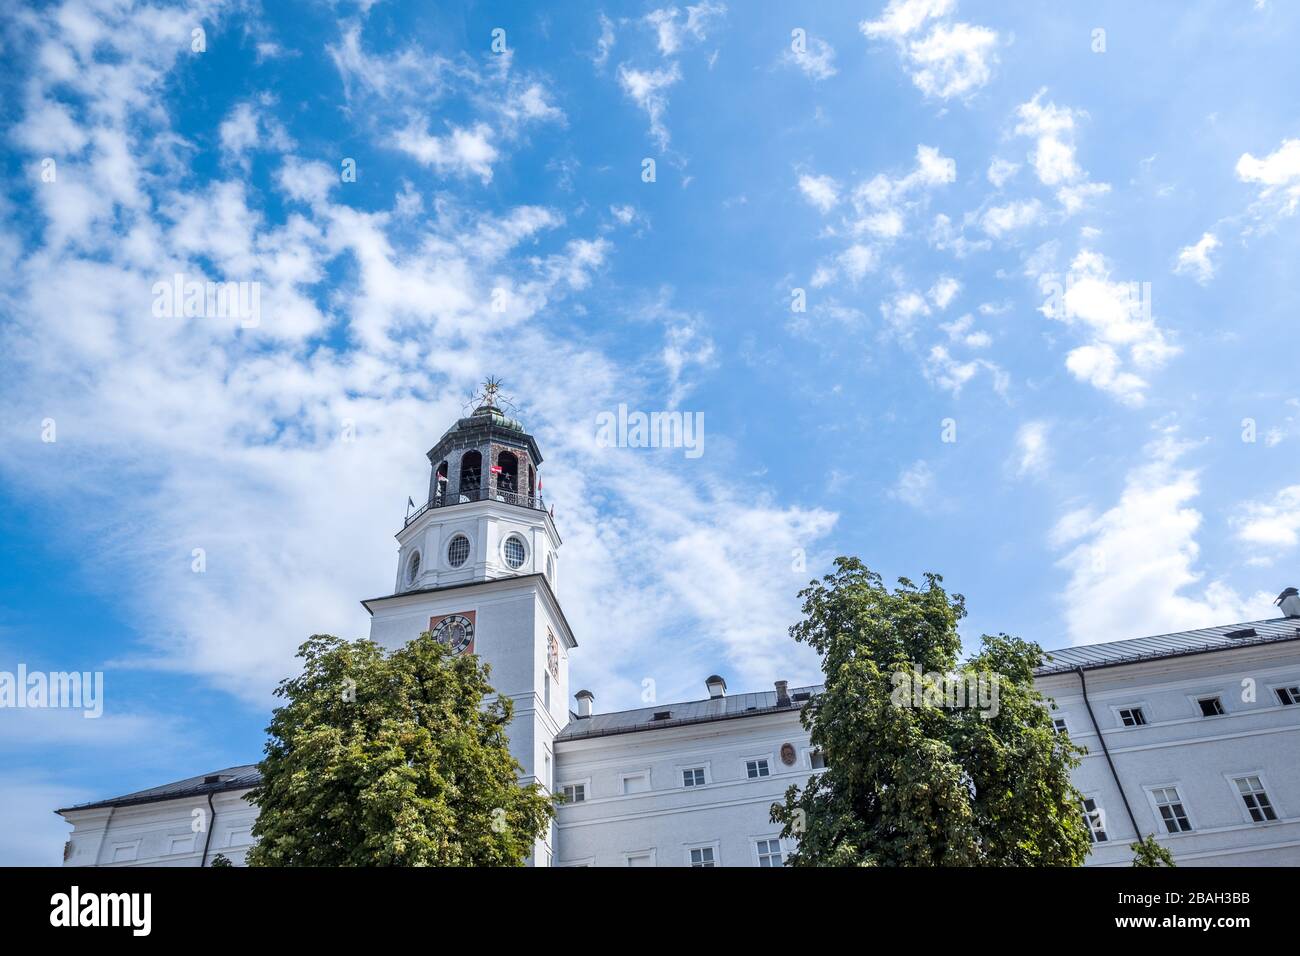 Regardez le célèbre clocher (Salzburger Glockenspiel) avec un ciel bleu et des nuages de cirrus derrière. Musée de Salzbourg, Autriche Banque D'Images